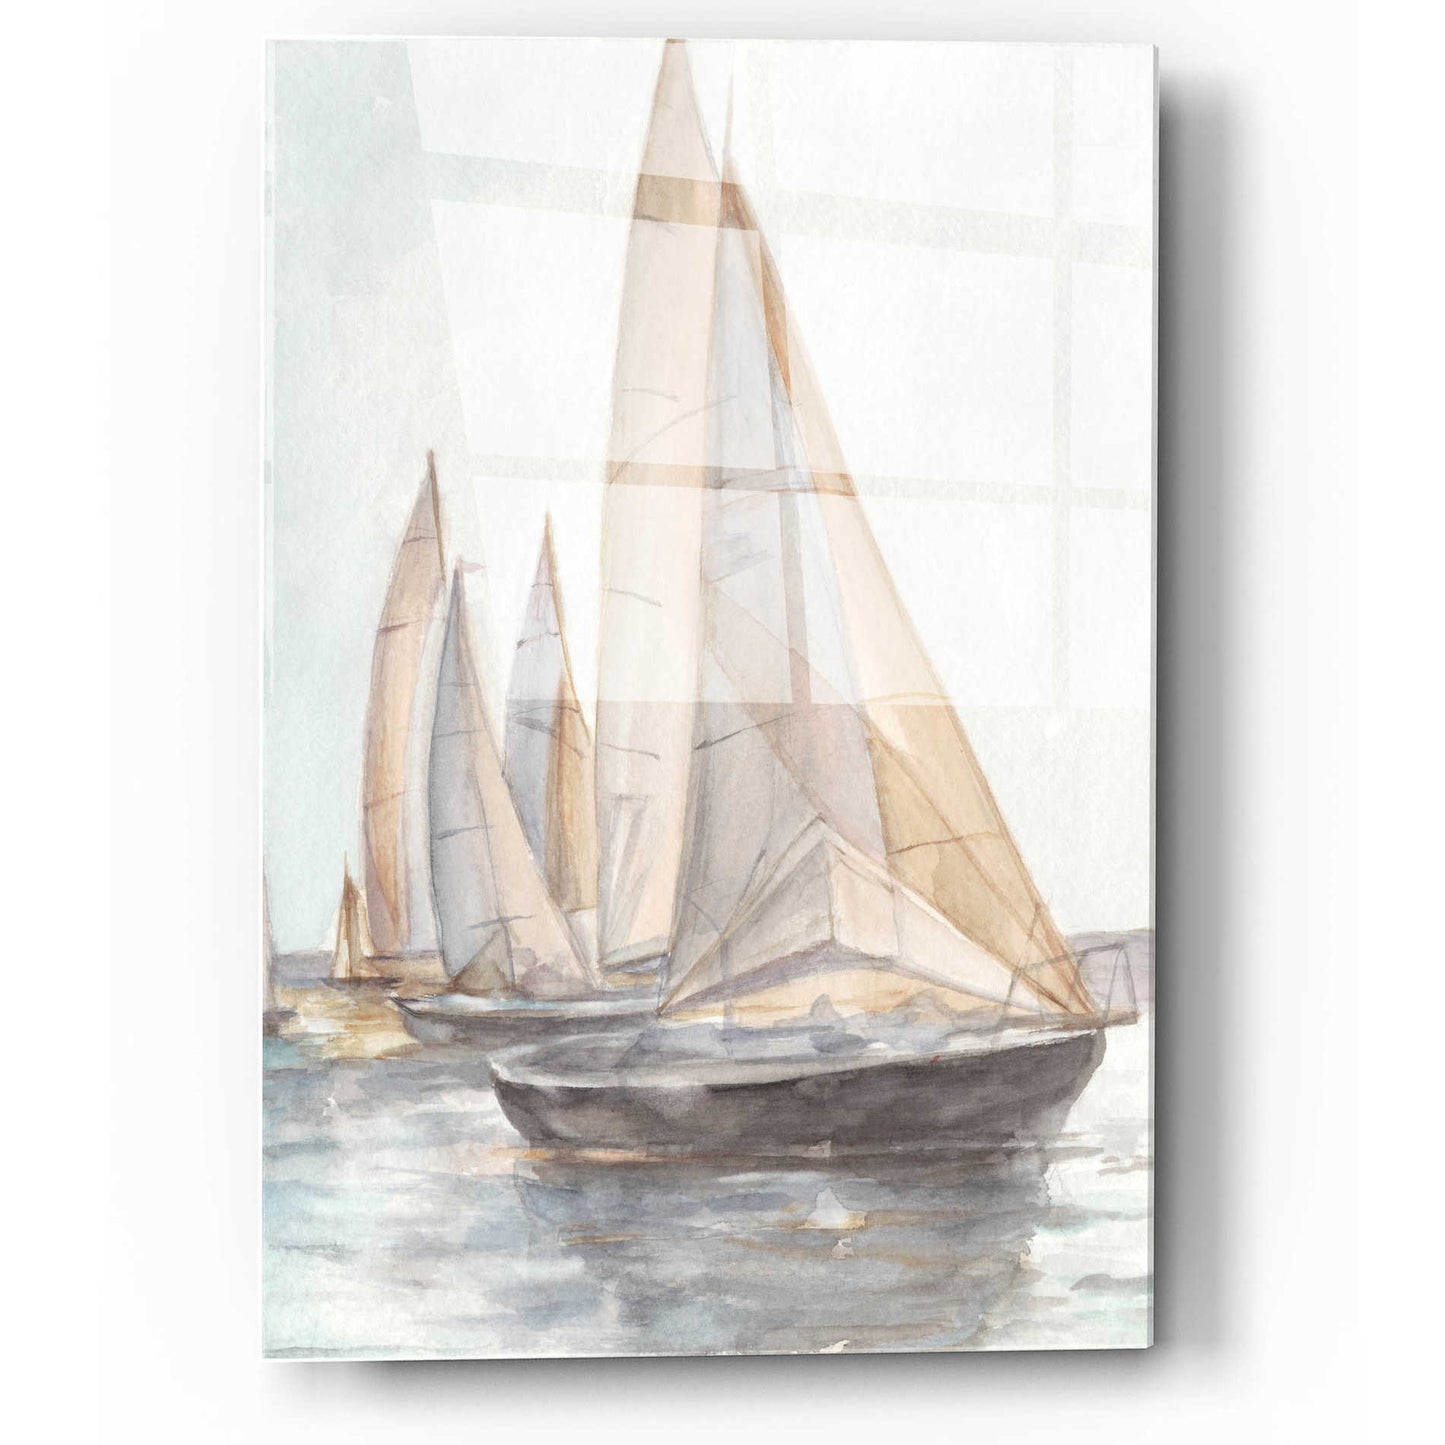 Epic Art 'Plein Air Sailboats II' by Ethan Harper, Acrylic Glass Wall Art,12x16